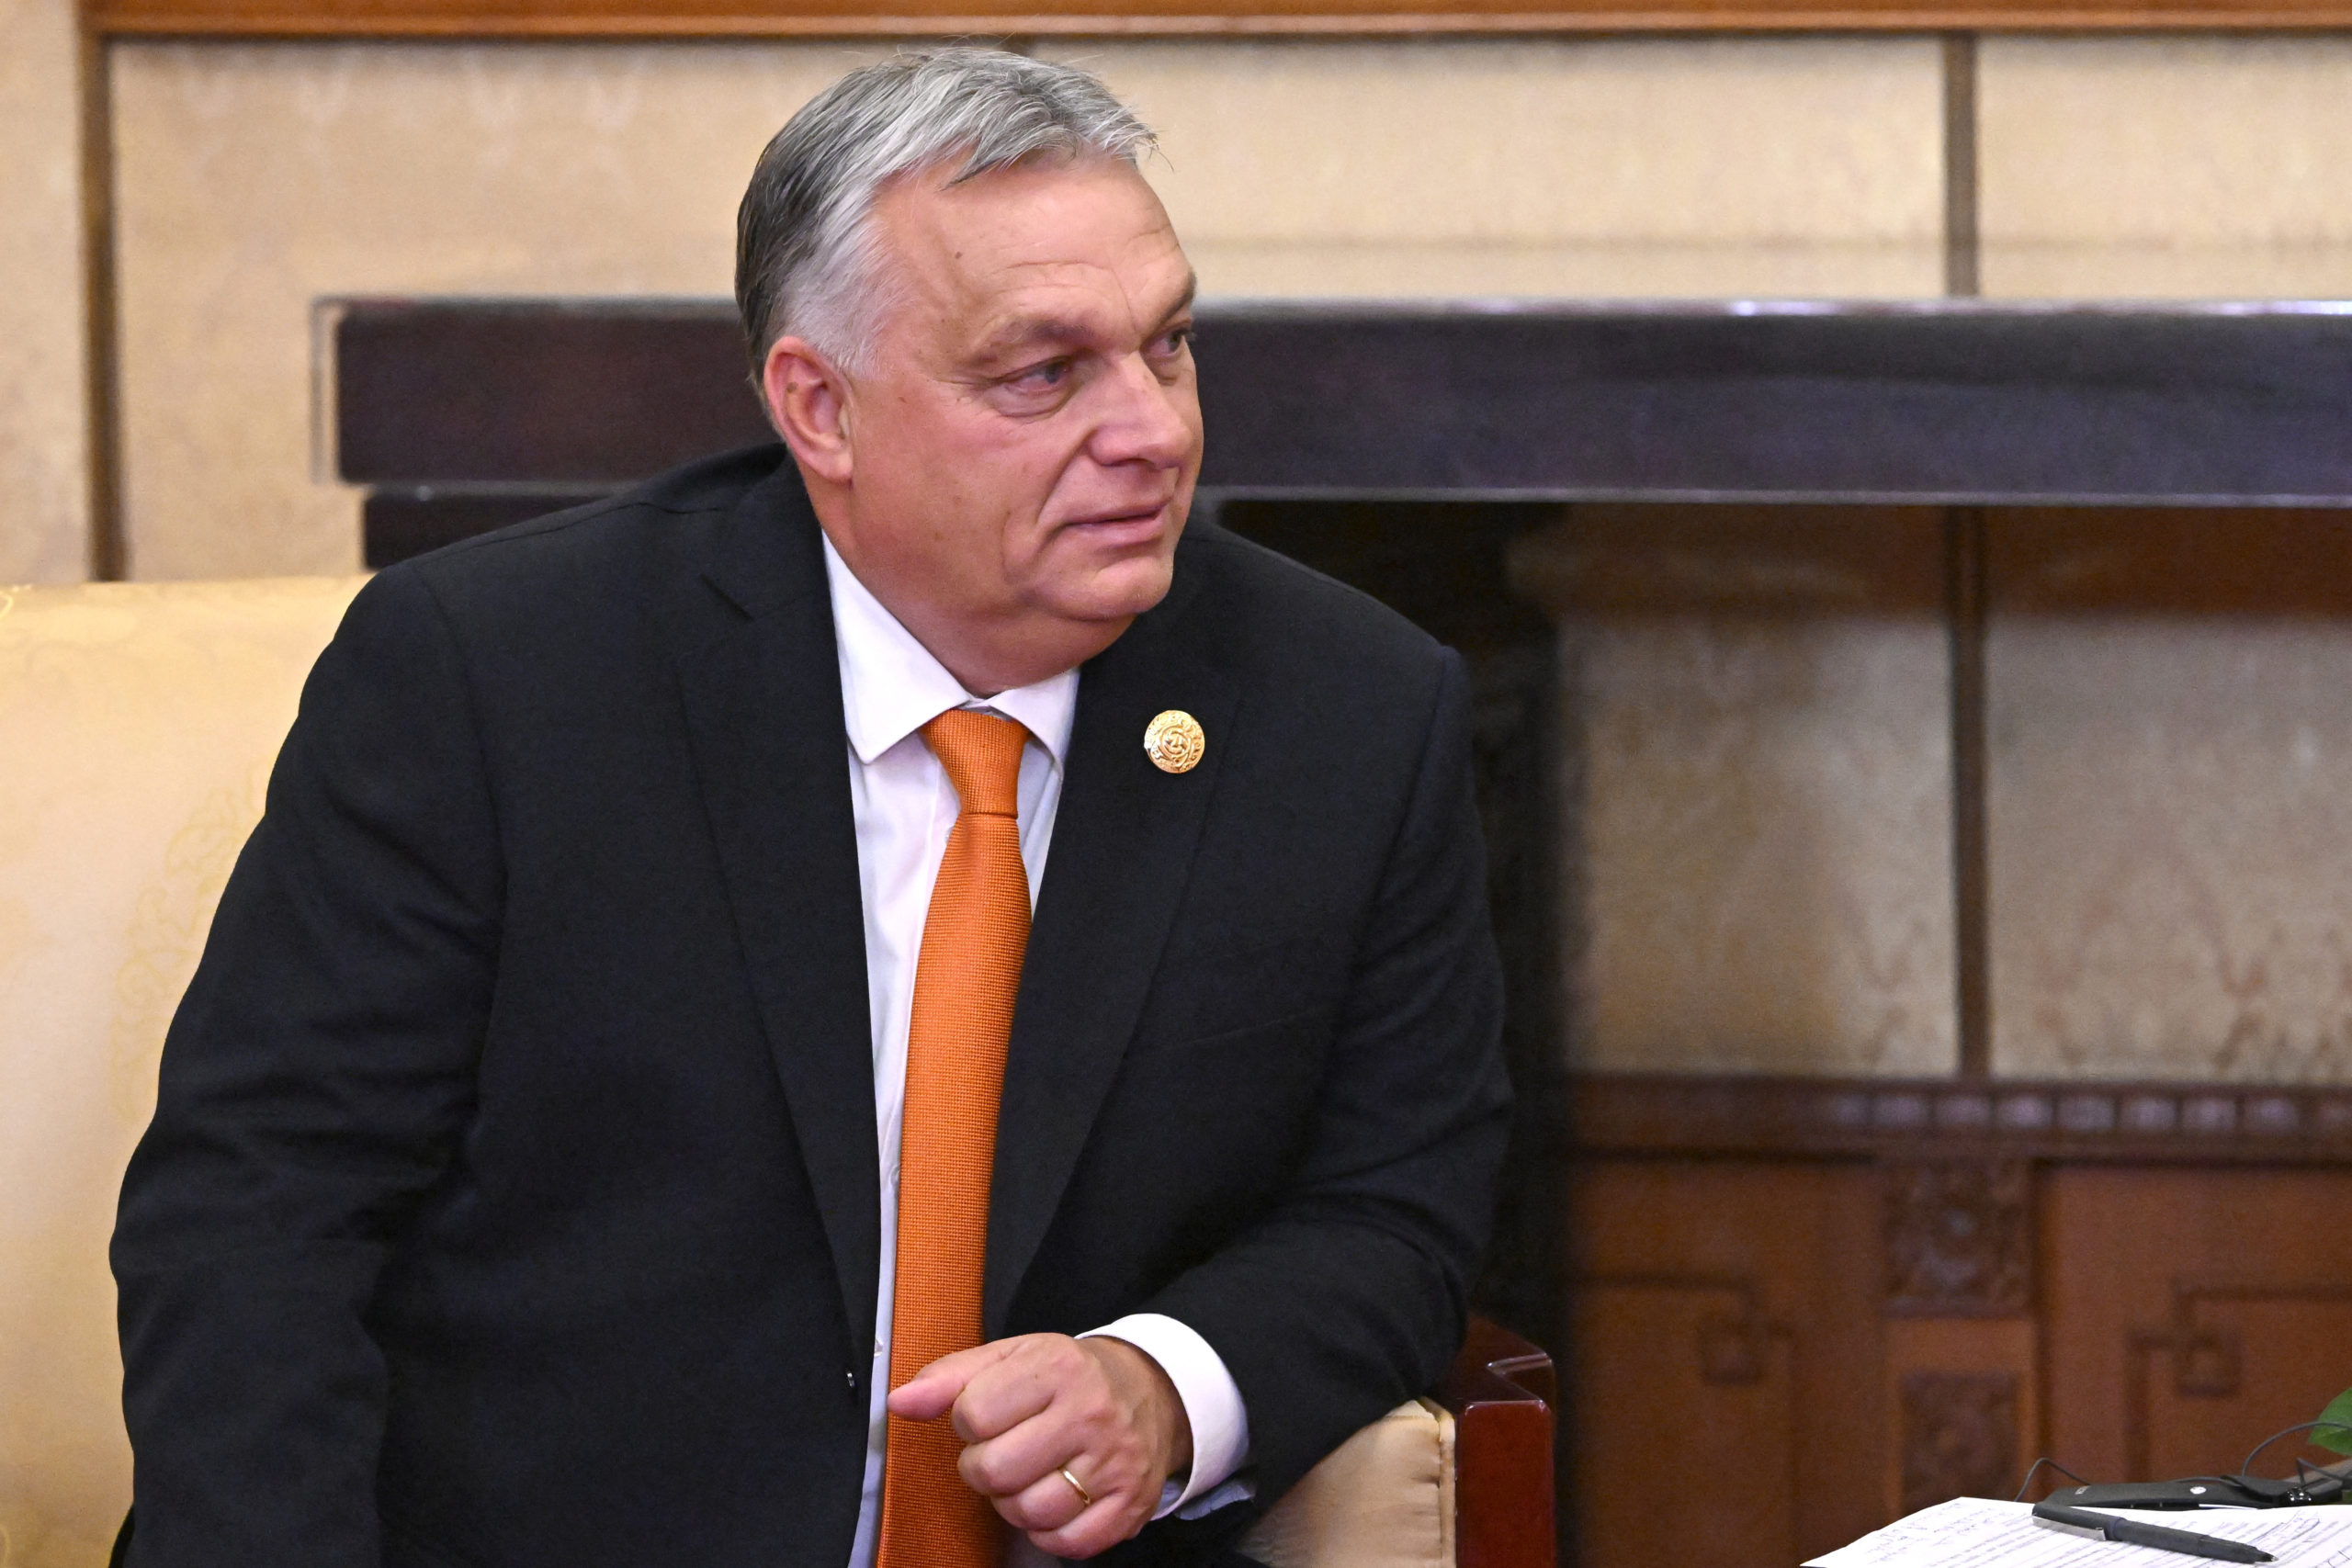 Orbán Viktor Kazahsztánban tárgyal